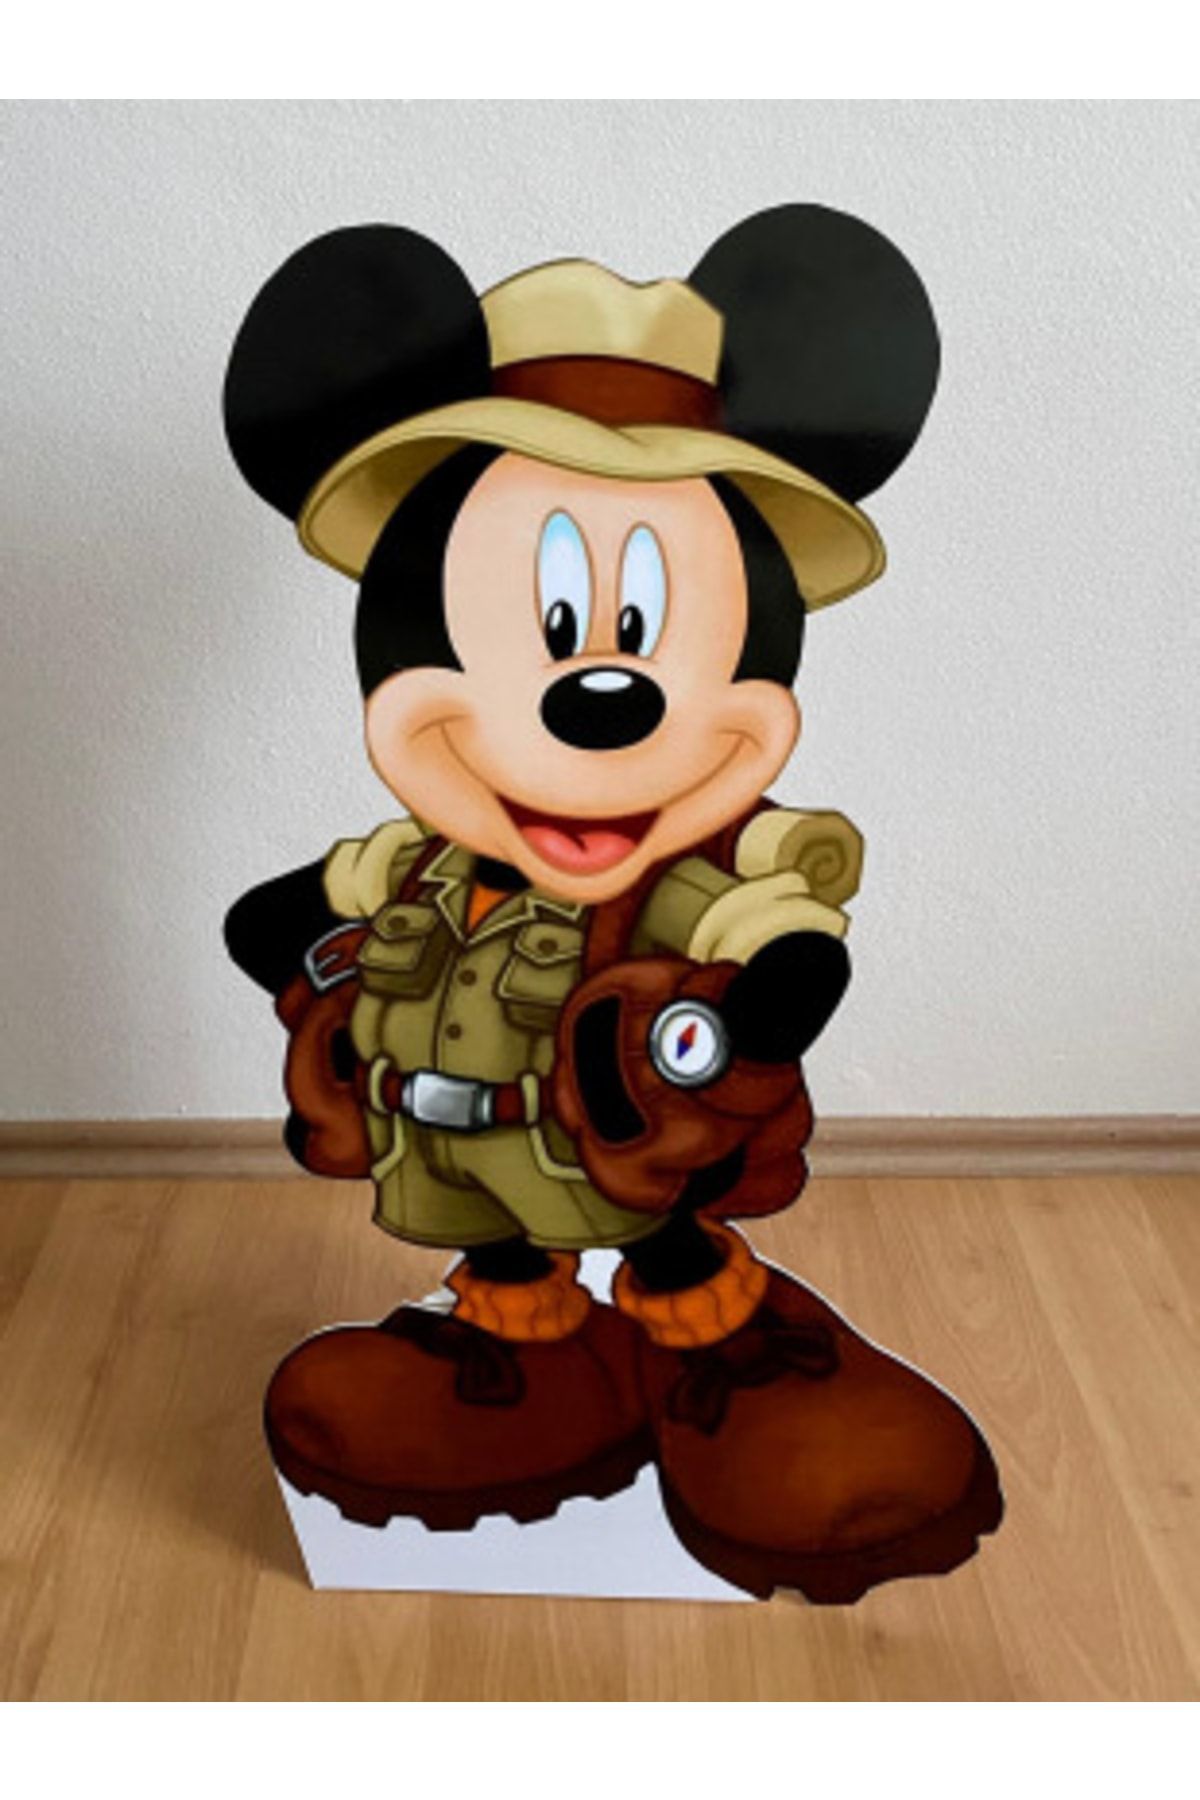 Okarttasarım Mickey Mouse Safari Masaönü Ayaklı Pano